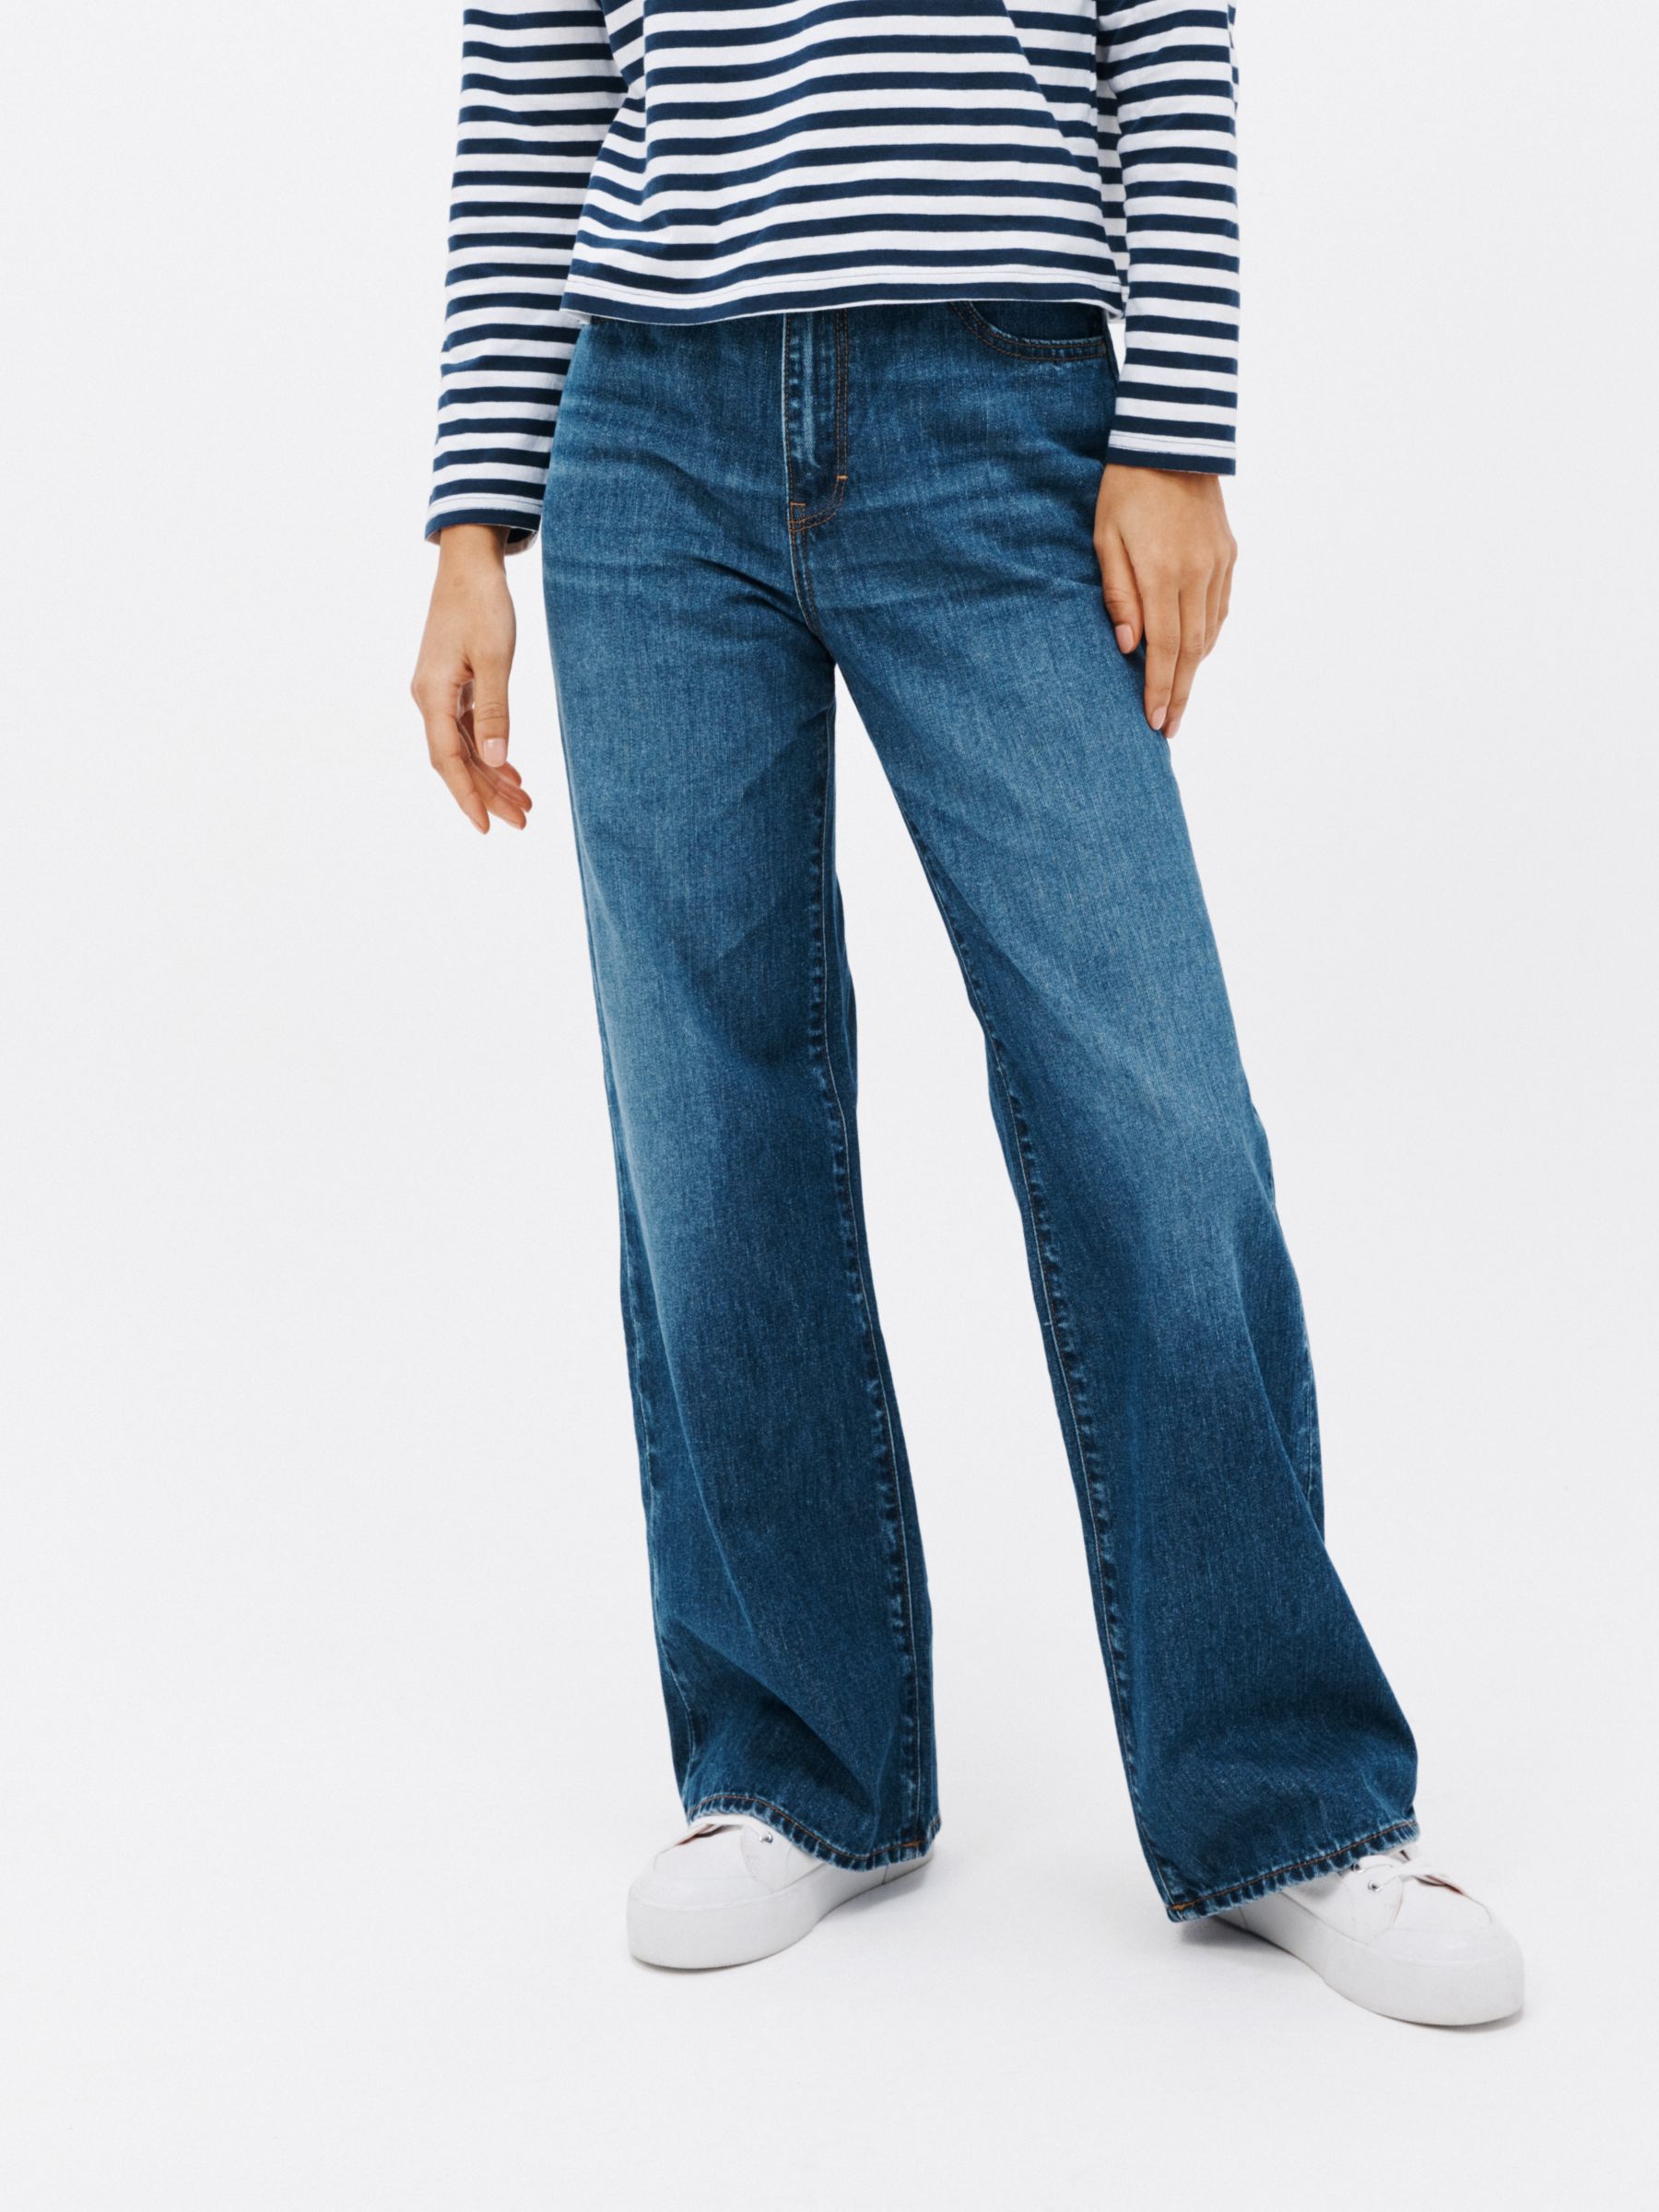 Однотонные широкие джинсы John Lewis ANYDAY, средне-размытый синий джинсы с широкими штанинами для мужчин и женщин прямые свободные облегающие джинсы в стиле ретро модные женские джинсы